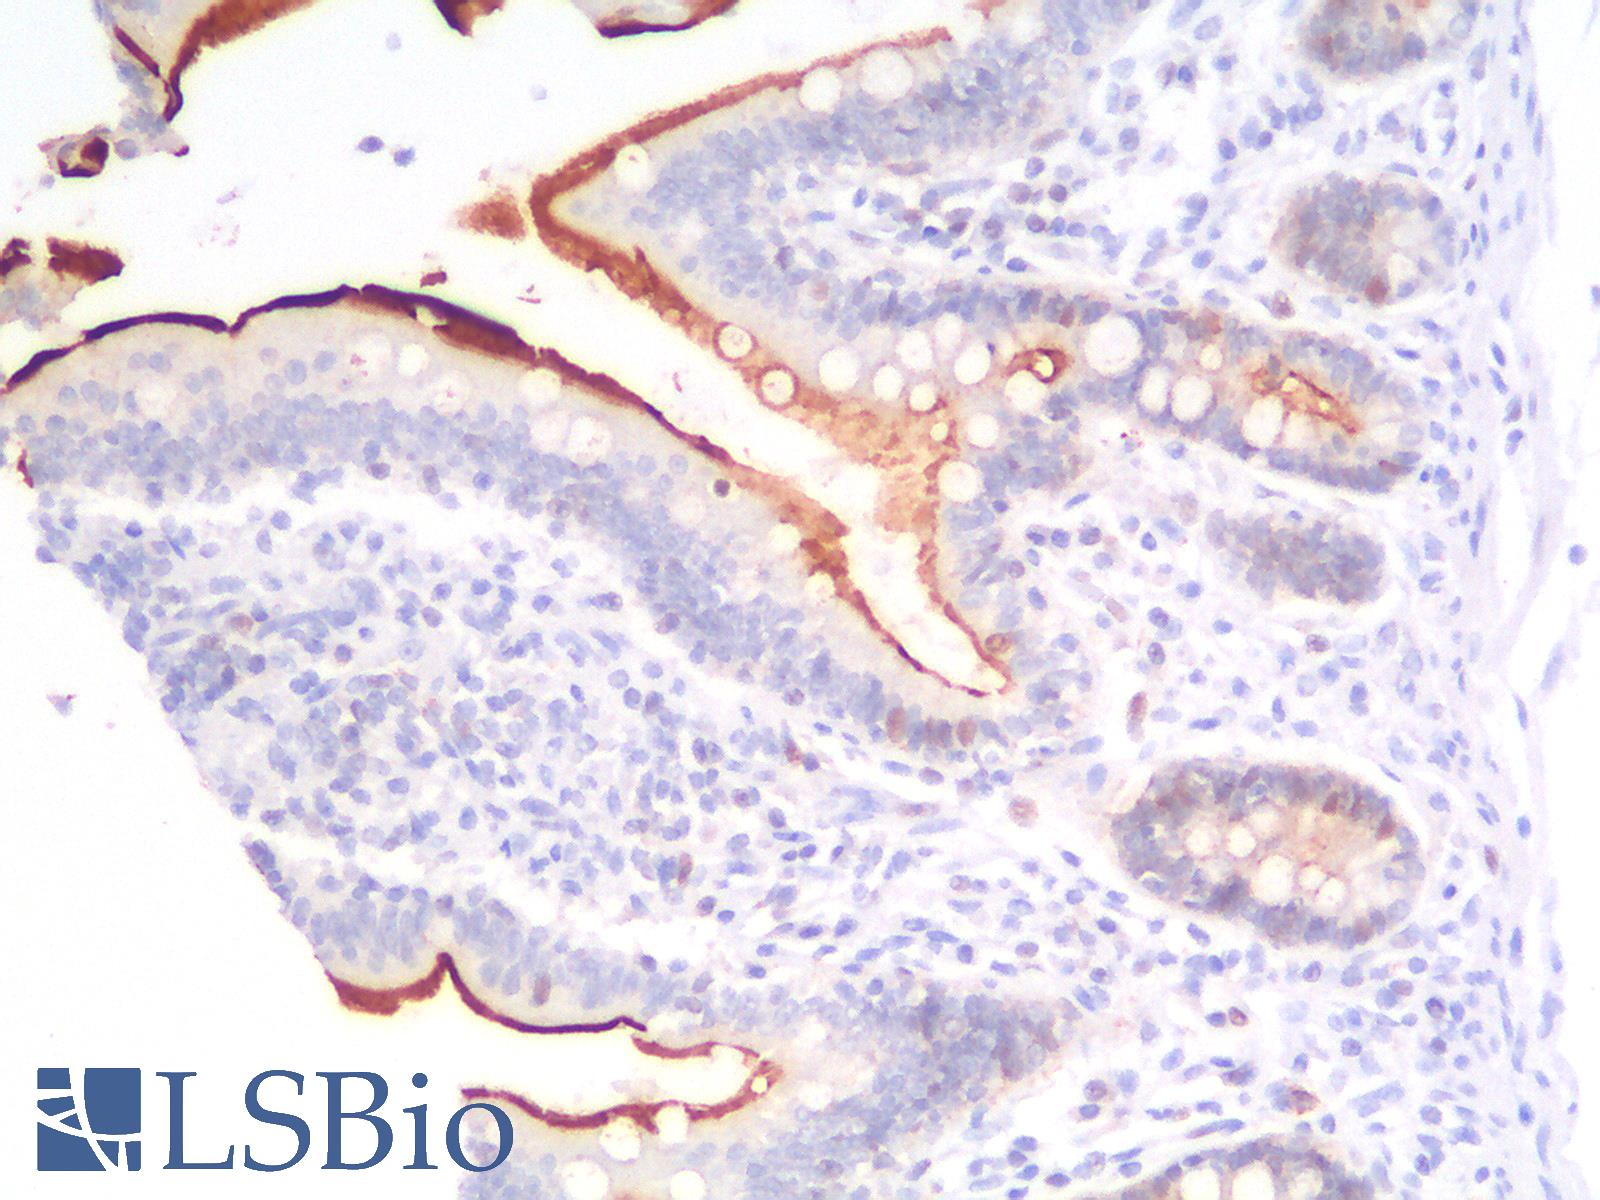 VIL1 / Villin Antibody - Human Smal Intestine: Formalin-Fixed, Paraffin-Embedded (FFPE)